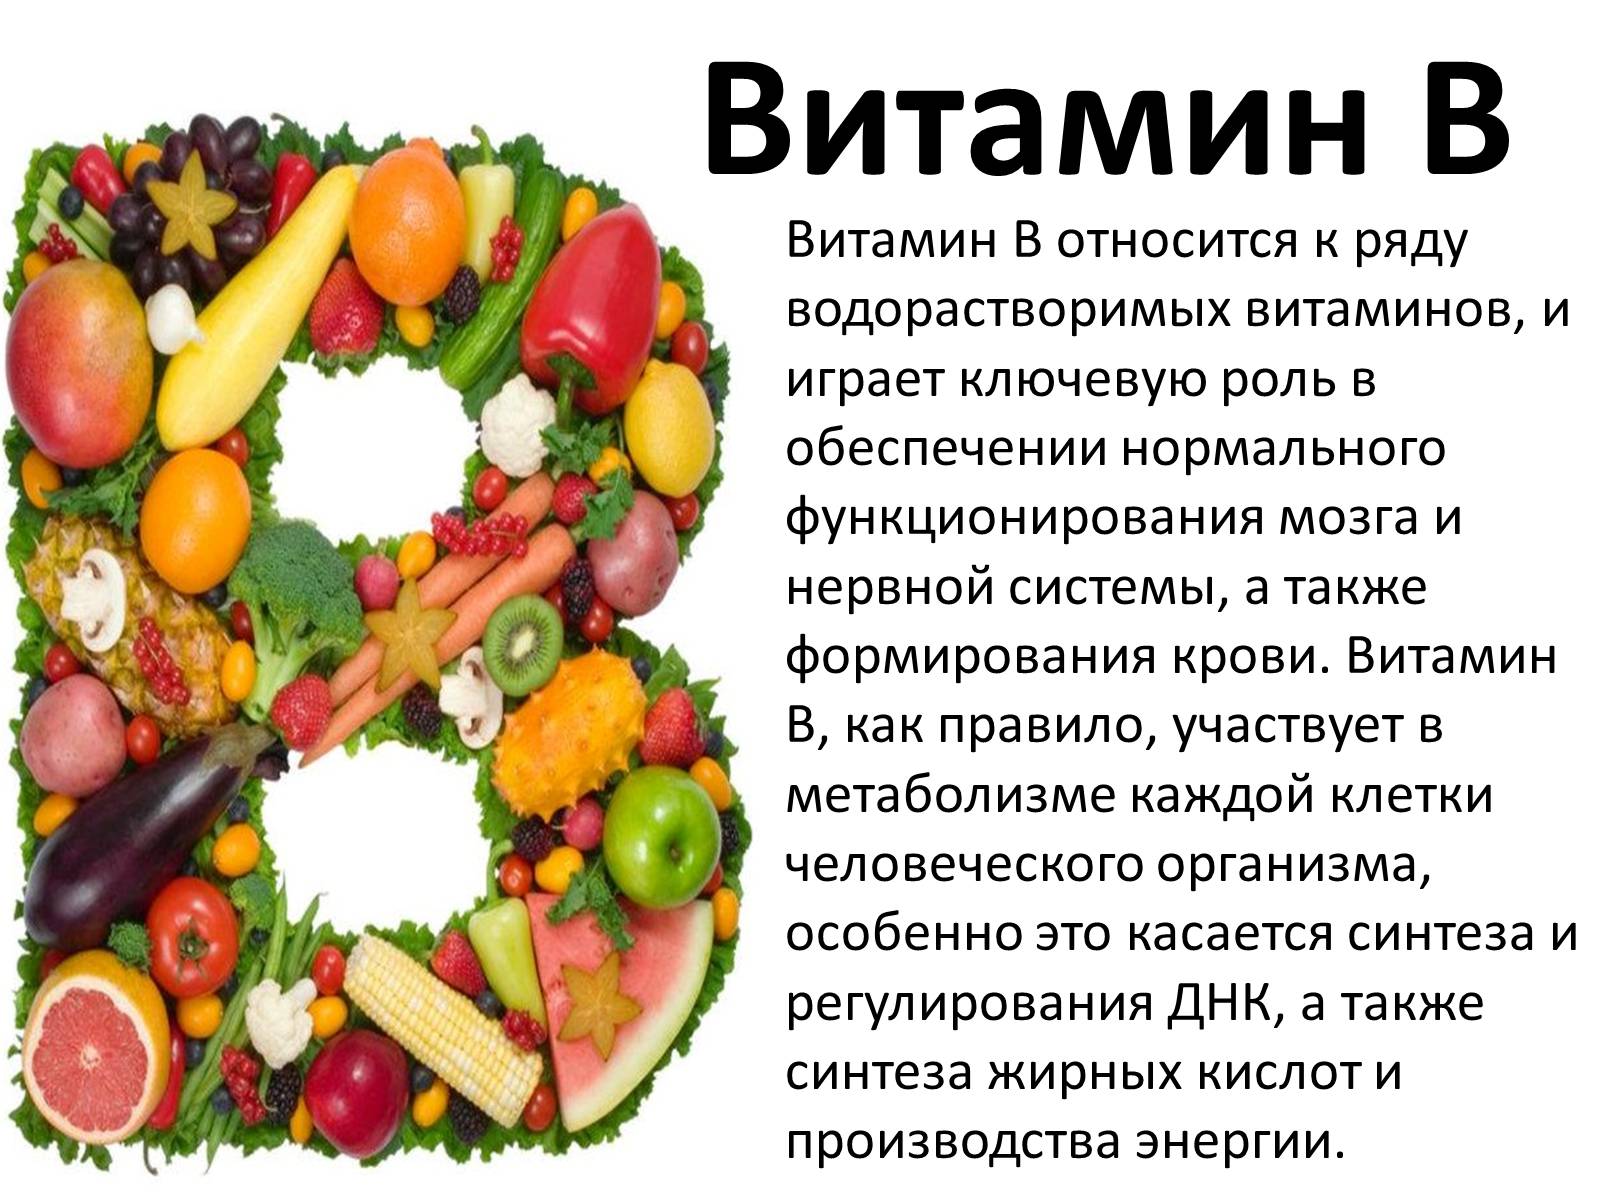 Про витамин б. Сообщение о витаминах. Презентация на тему витамины. Доклад про витамины. Краткая информация о витаминах.